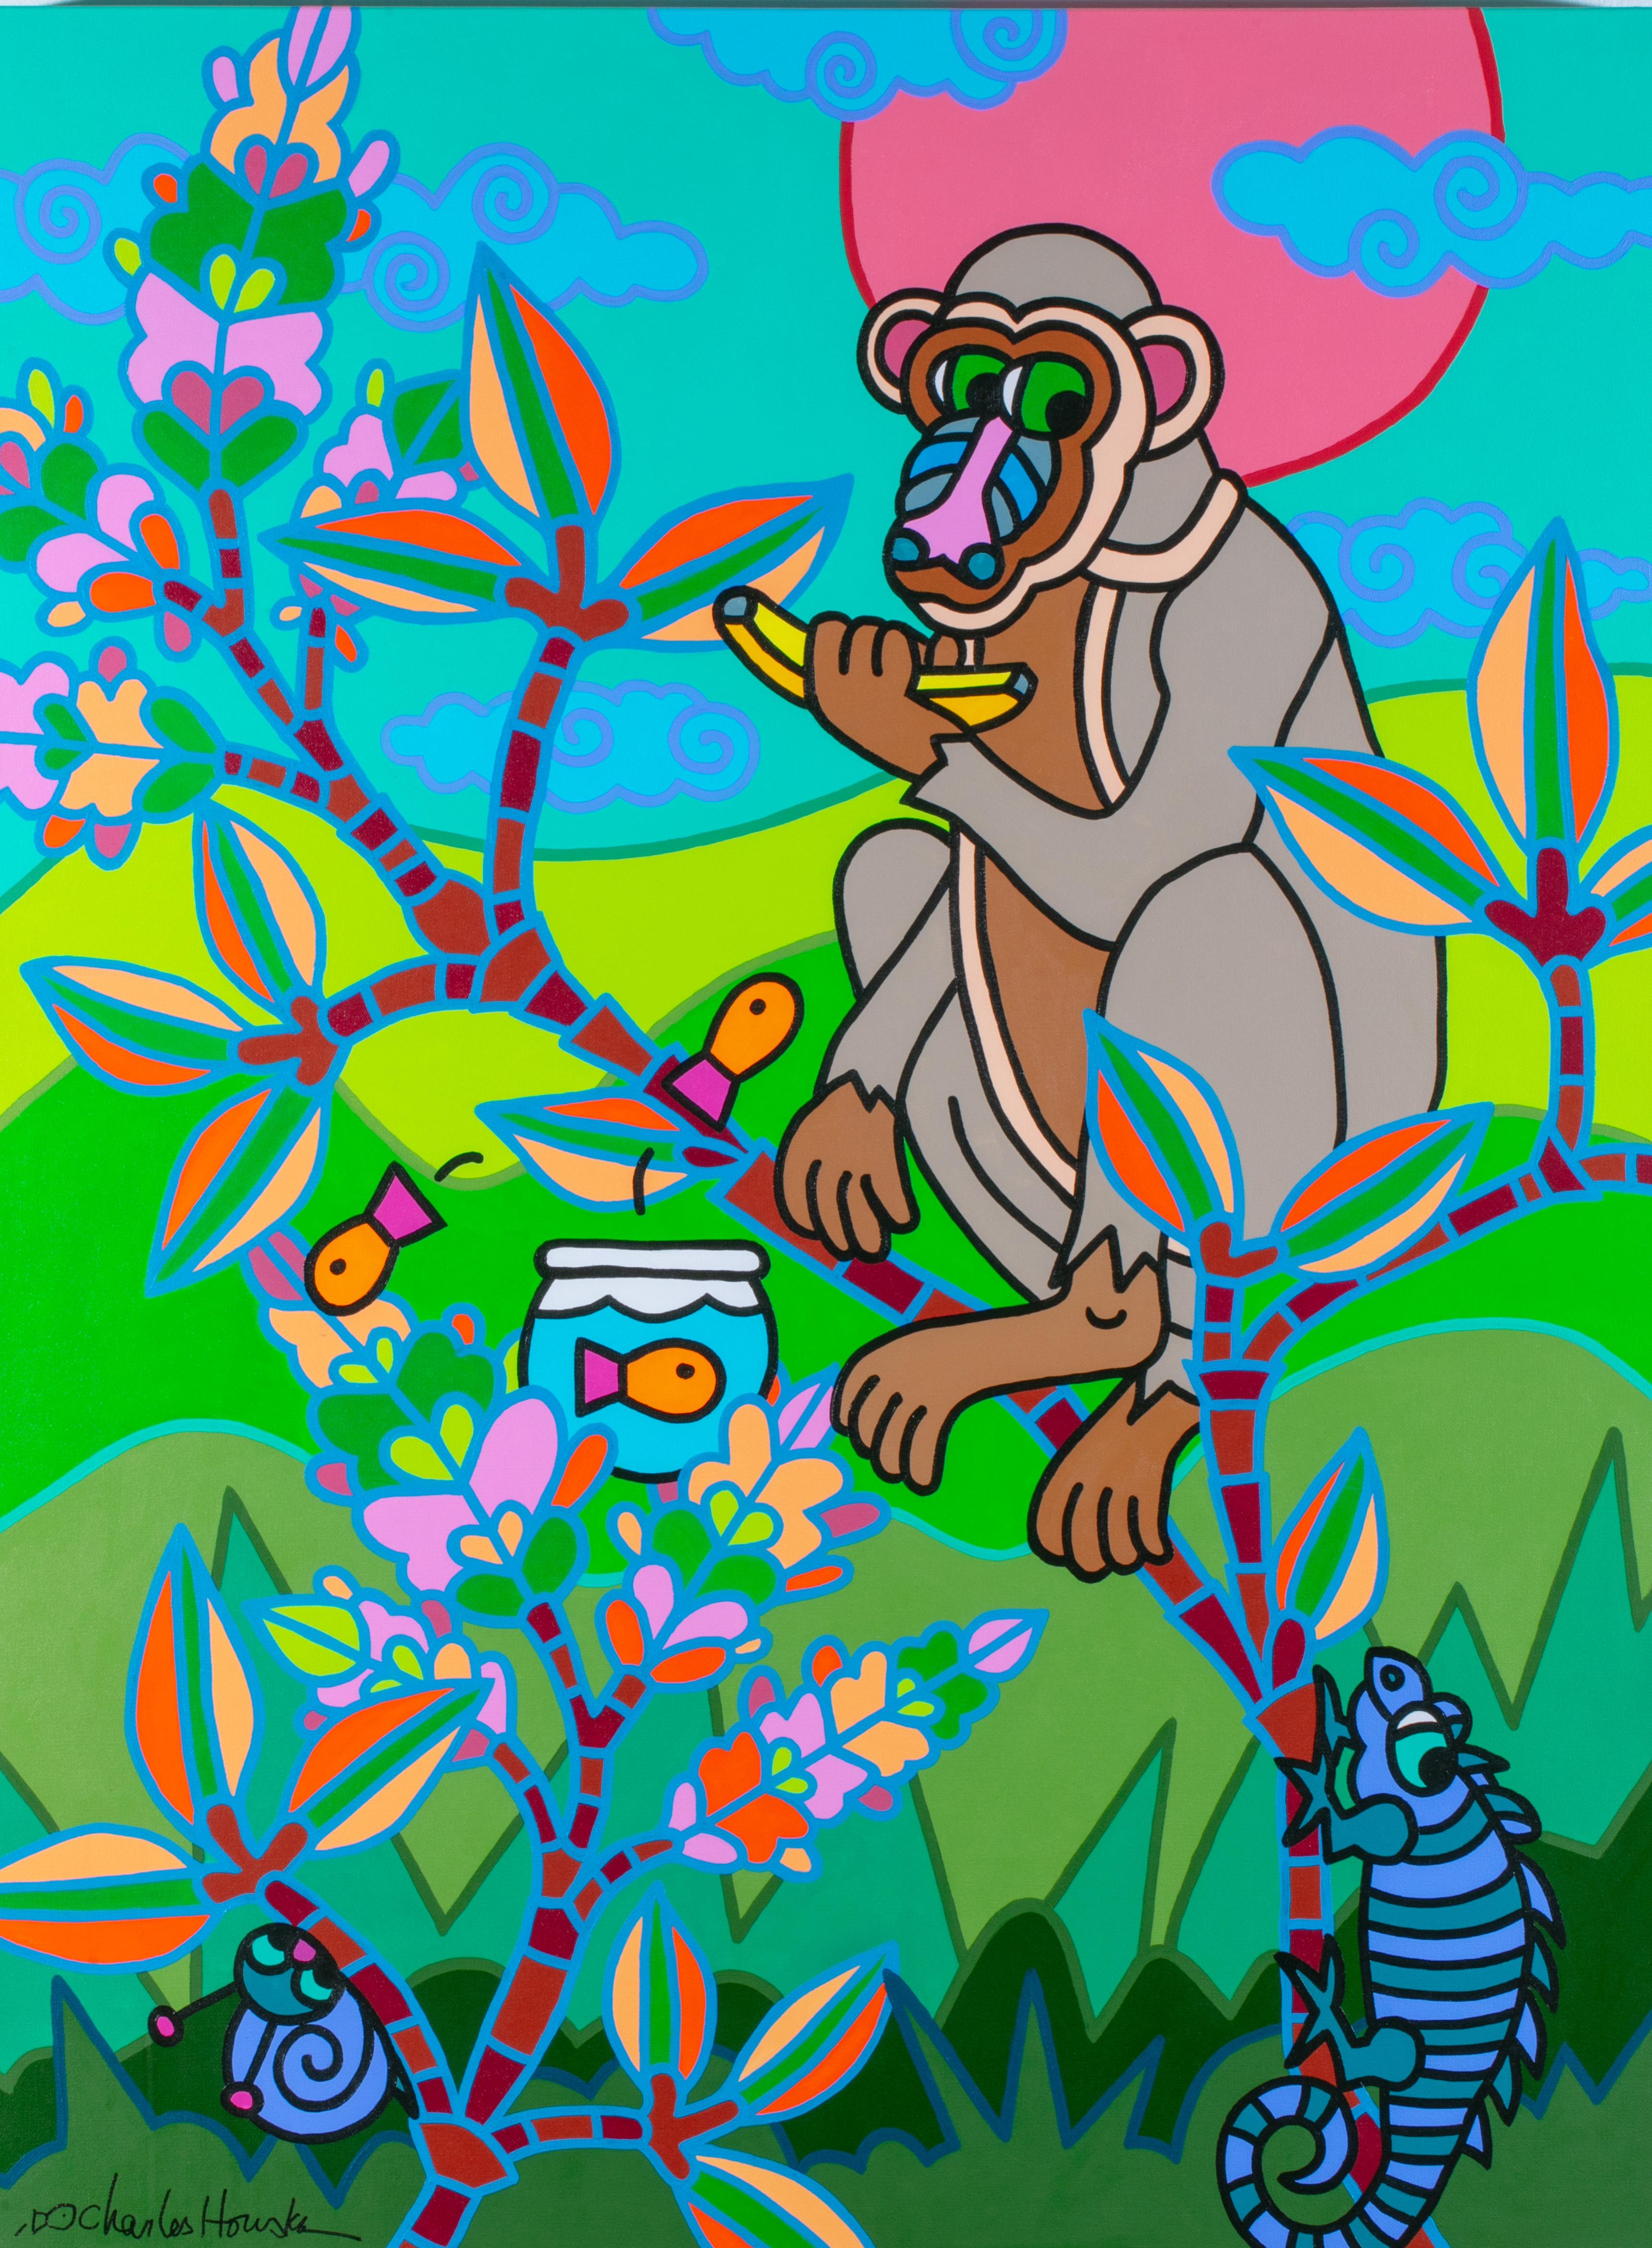 Party in Dschungelform aus der Chinoiserie – Painting von Charles Houska